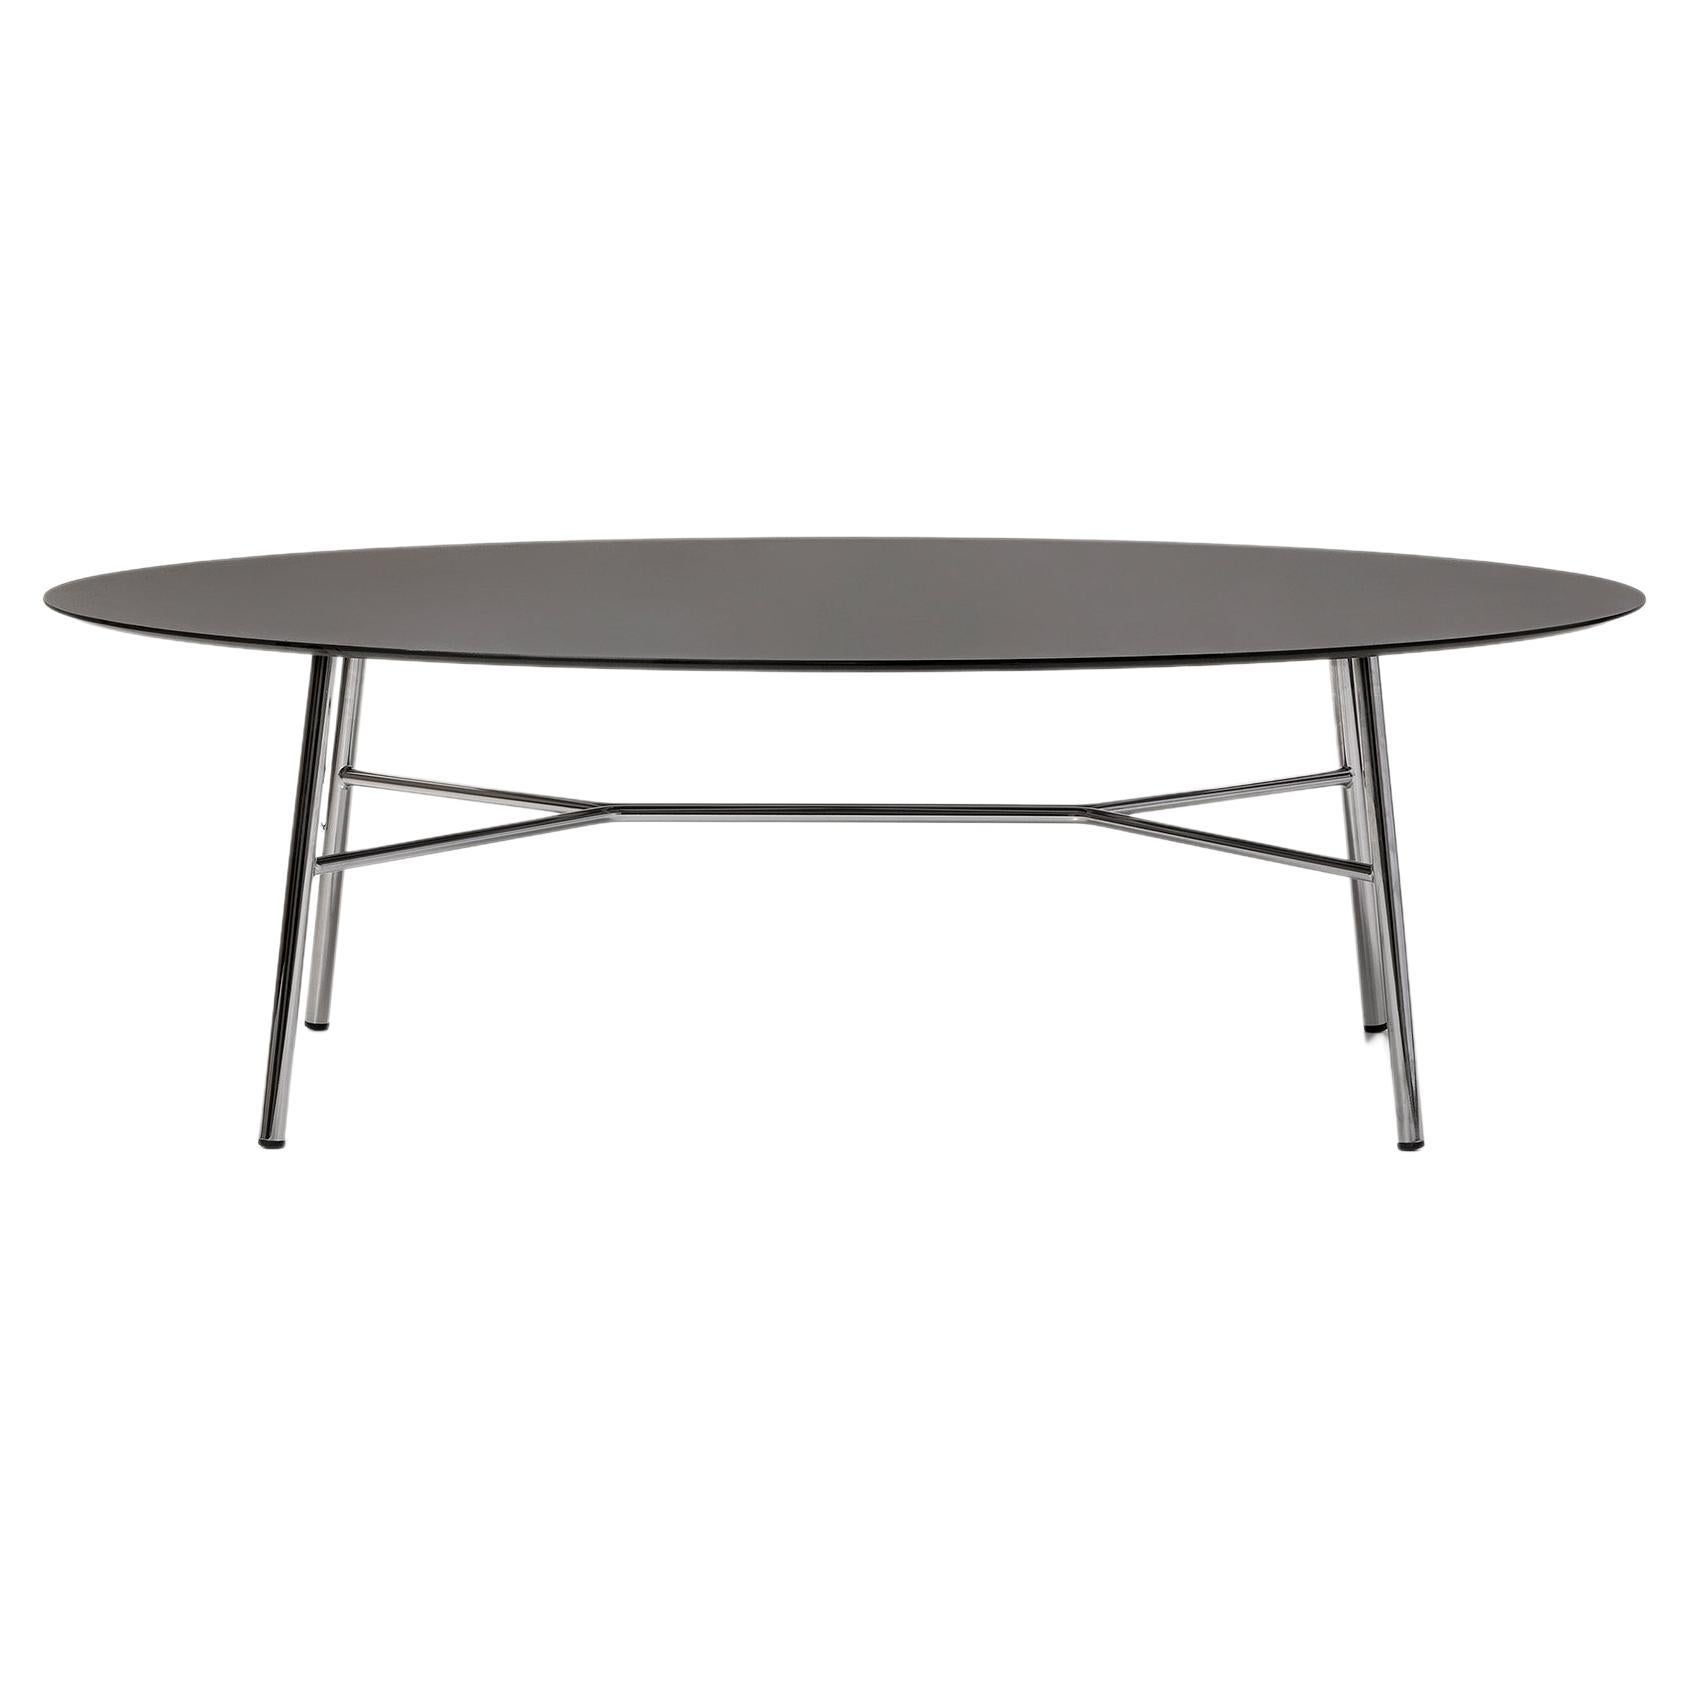 Petite table Yuki, cadre métallique, couleur blanche, design, table basse, verre, ovale